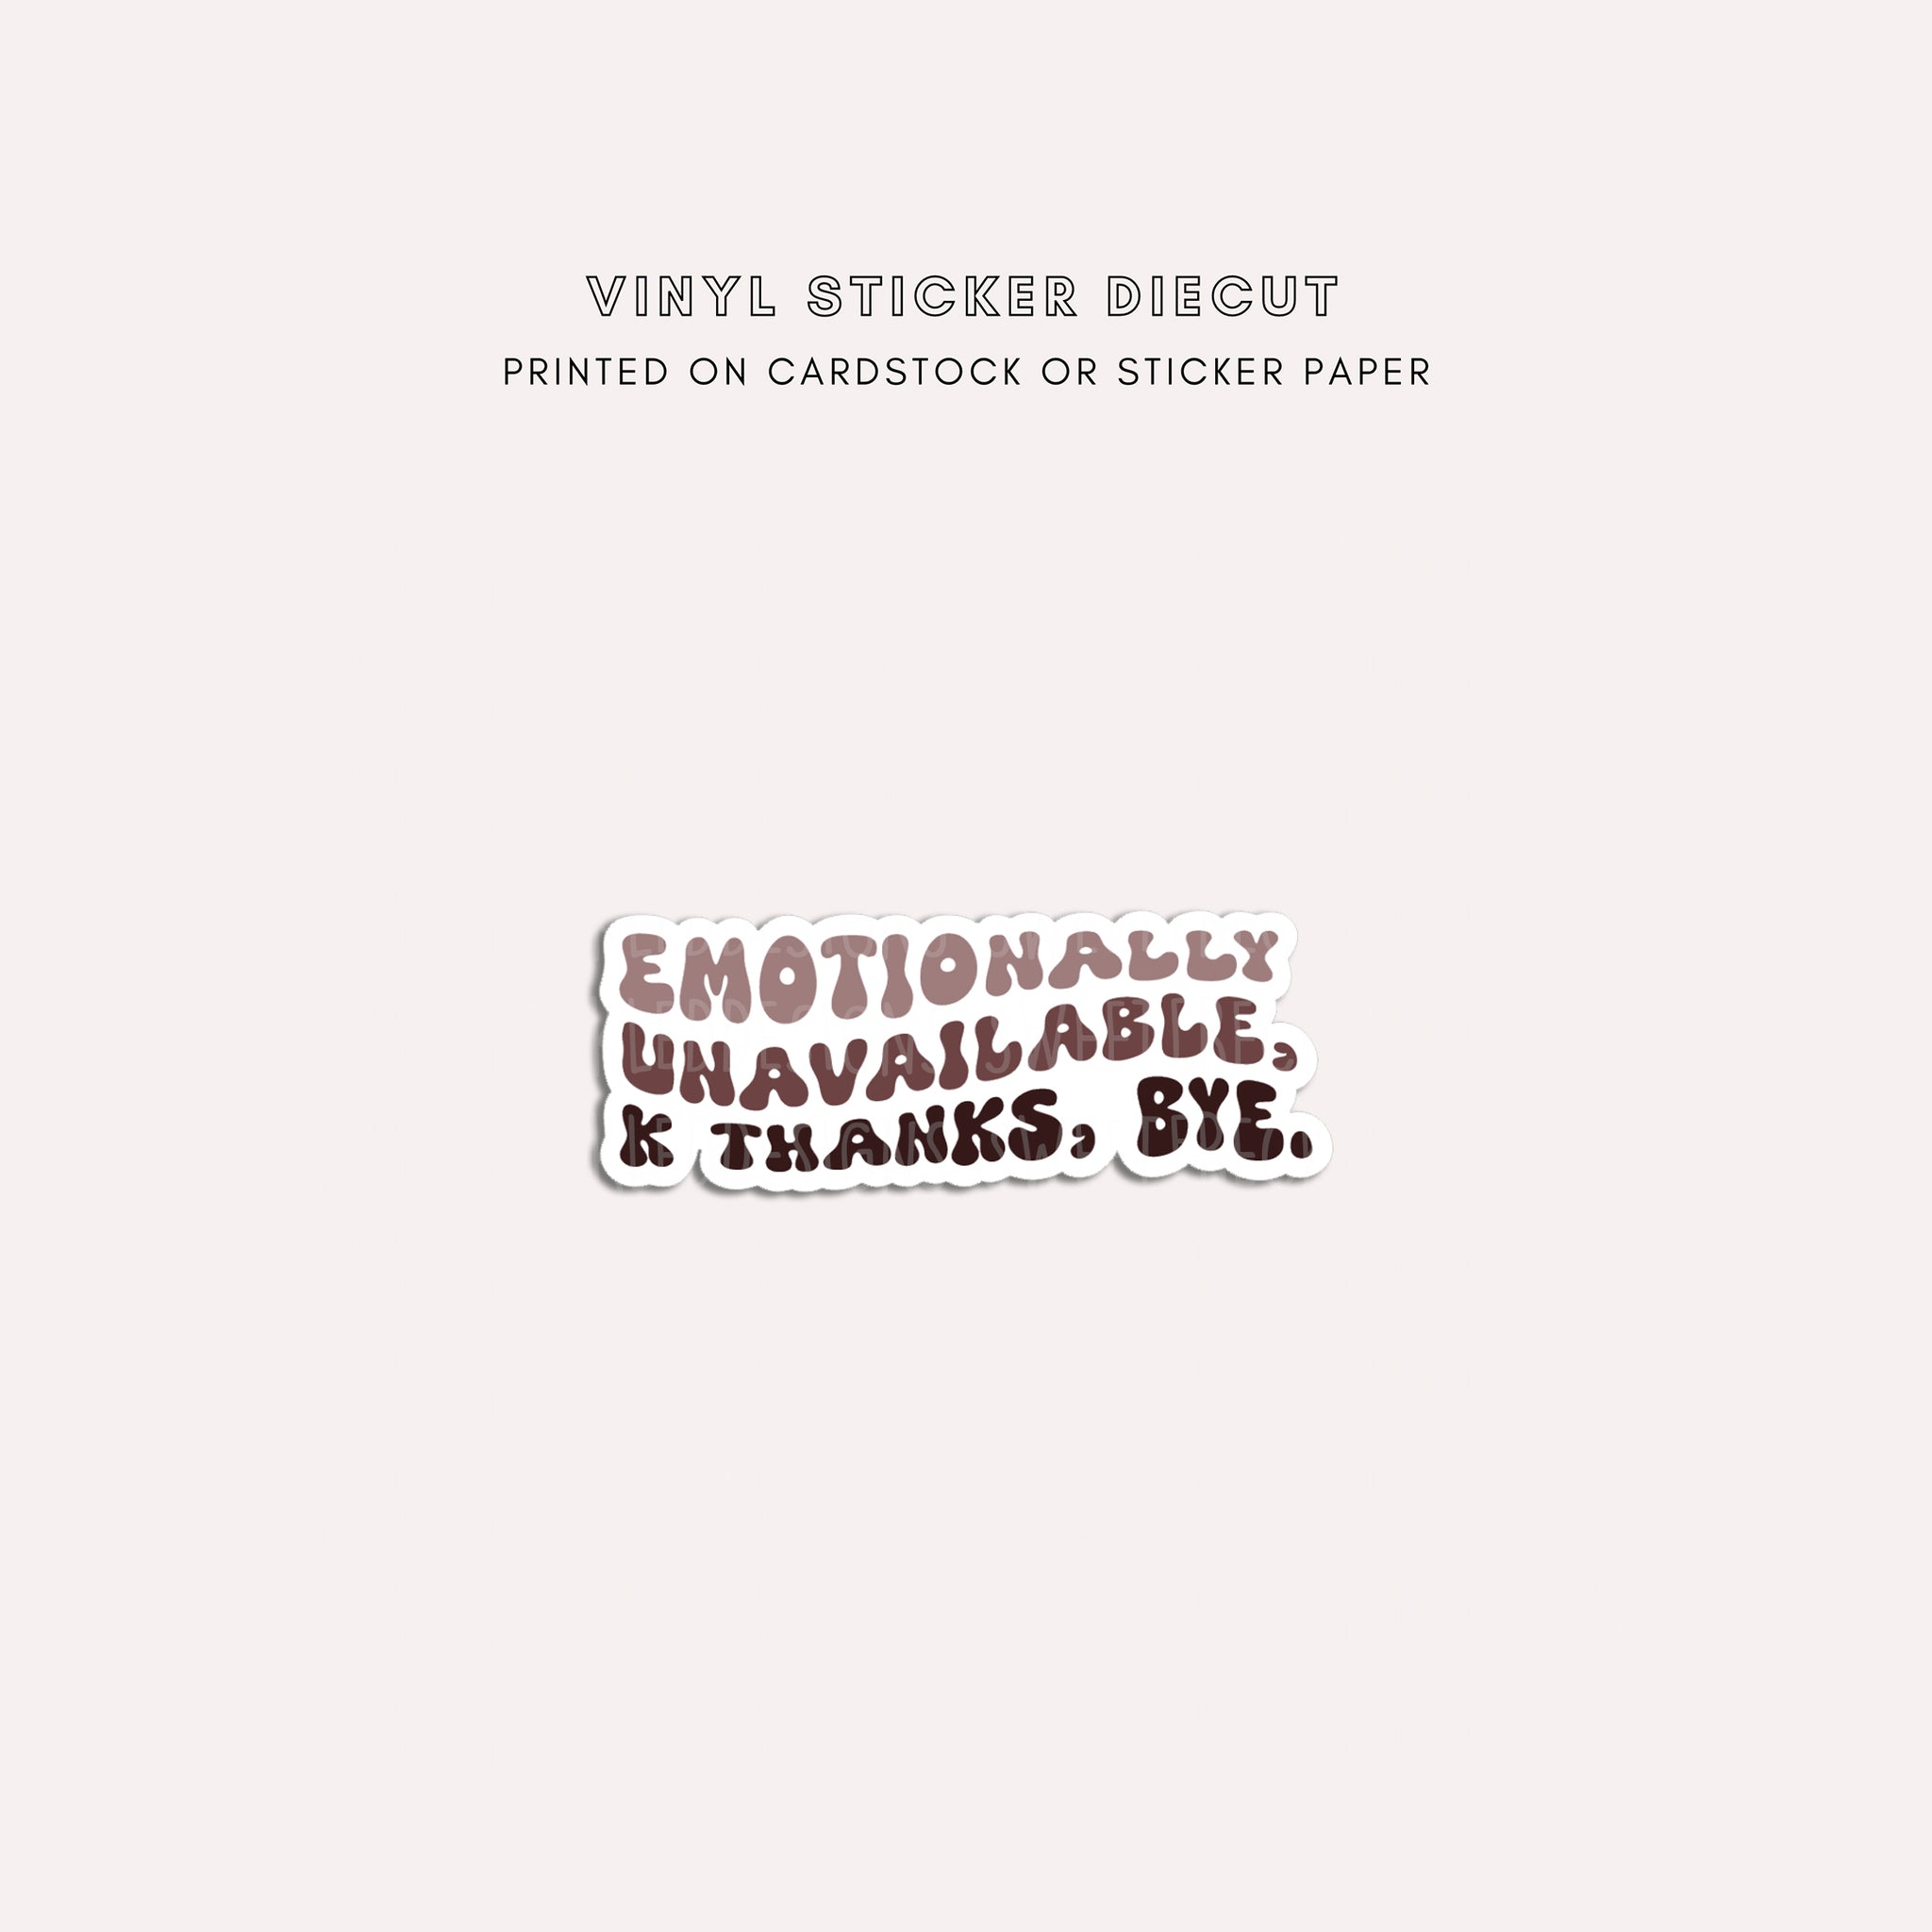 Vinyl Sticker Diecut - Emotionally Unavailable